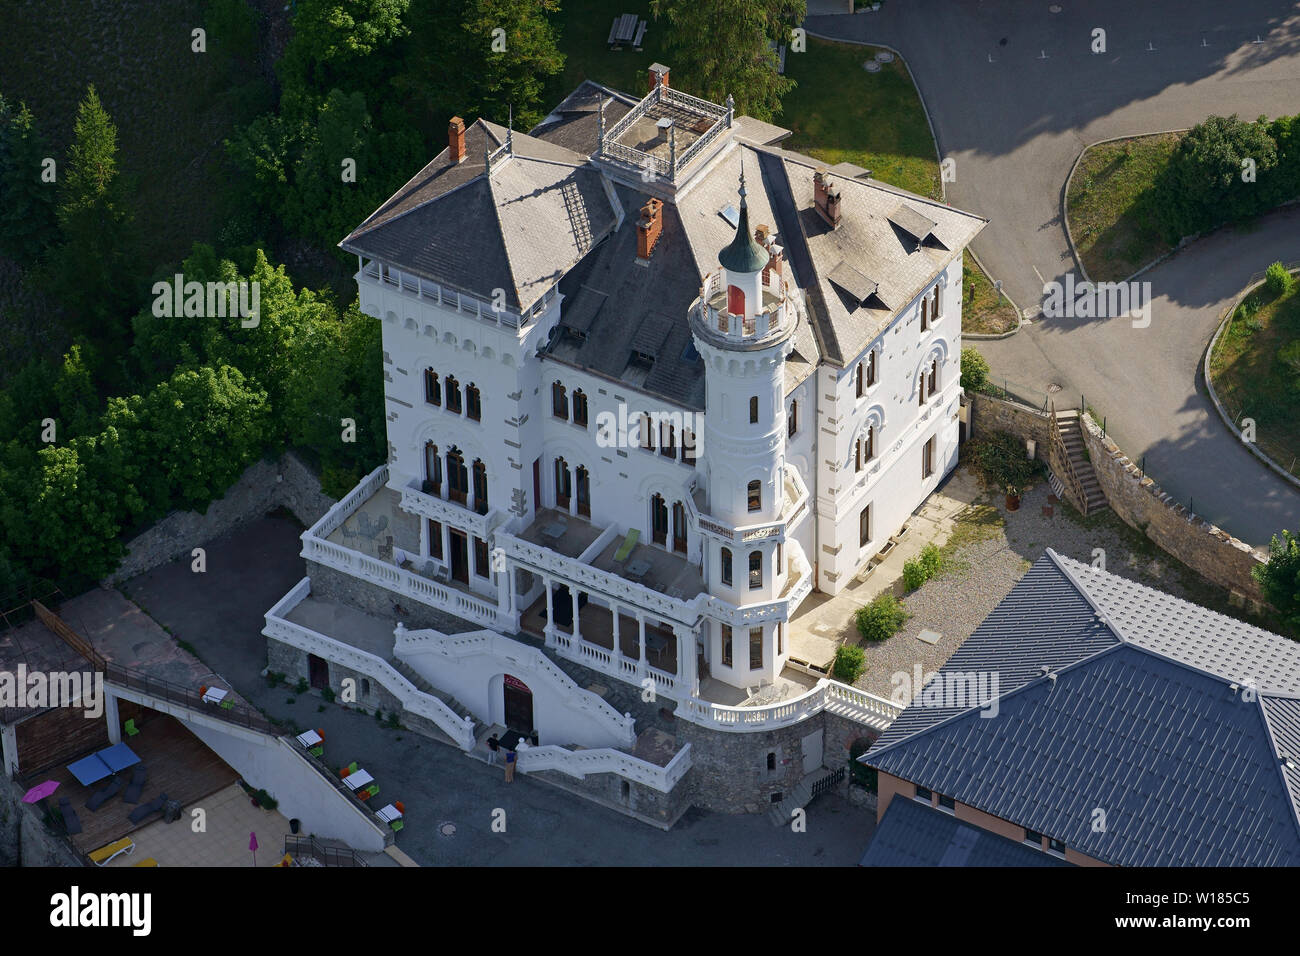 VISTA AEREA. Grande villa costruita all'inizio del 1900s, elencata nel registro dei monumenti storici. Château des Magnans, Jausiers, Francia. Foto Stock